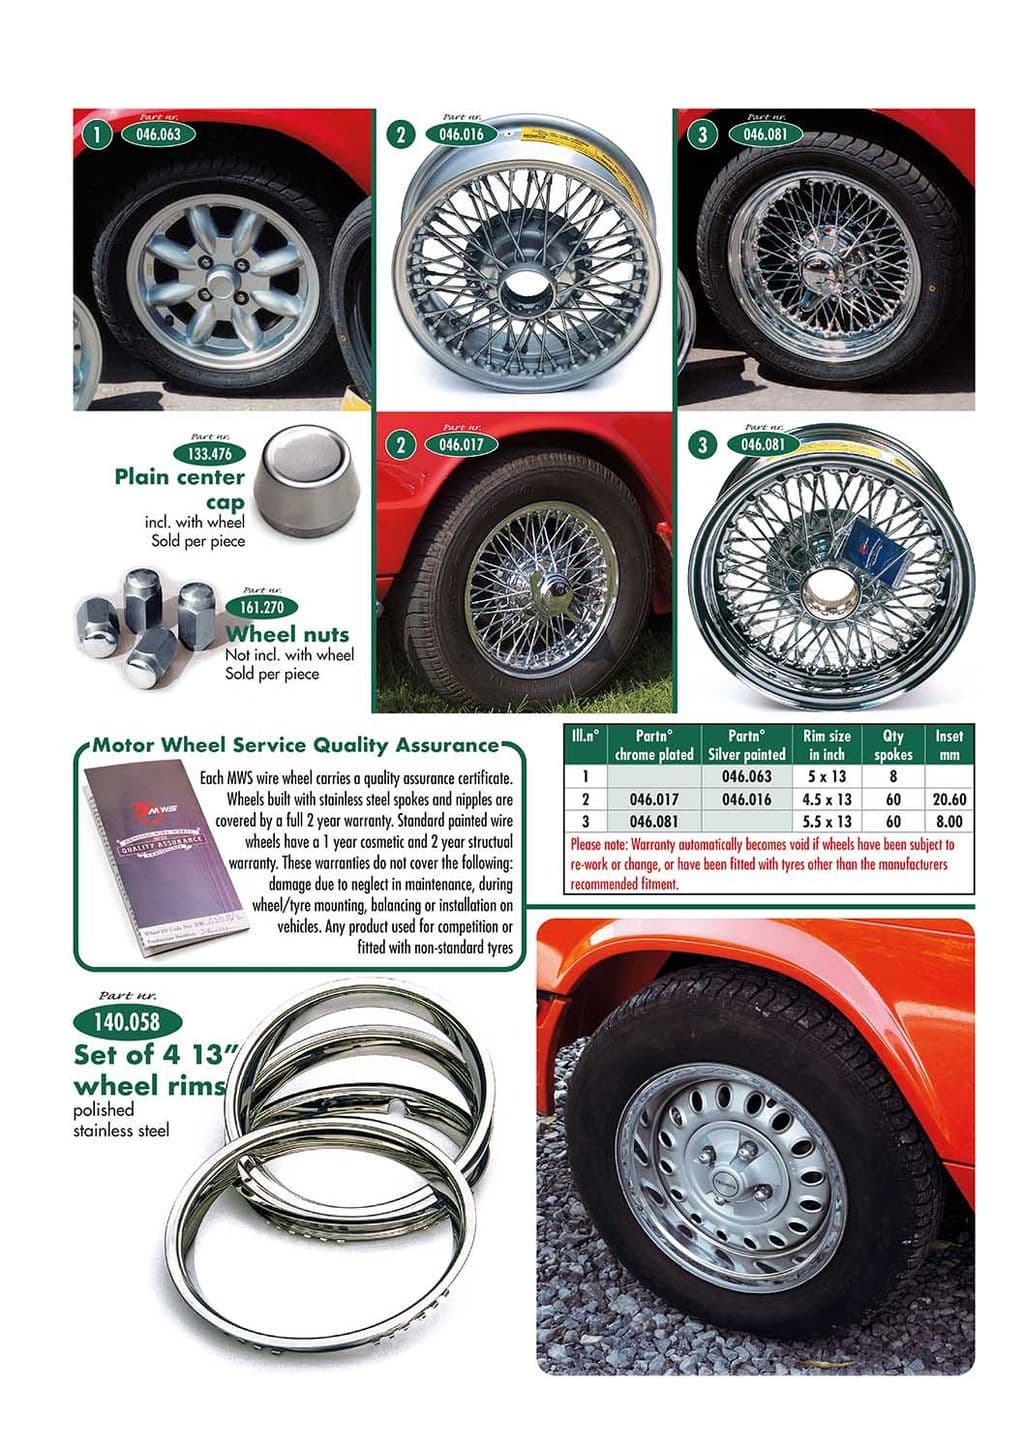 Wheels & accessories - Finiture Esterni - Accessori e Tuning - Triumph GT6 MKI-III 1966-1973 - Wheels & accessories - 1